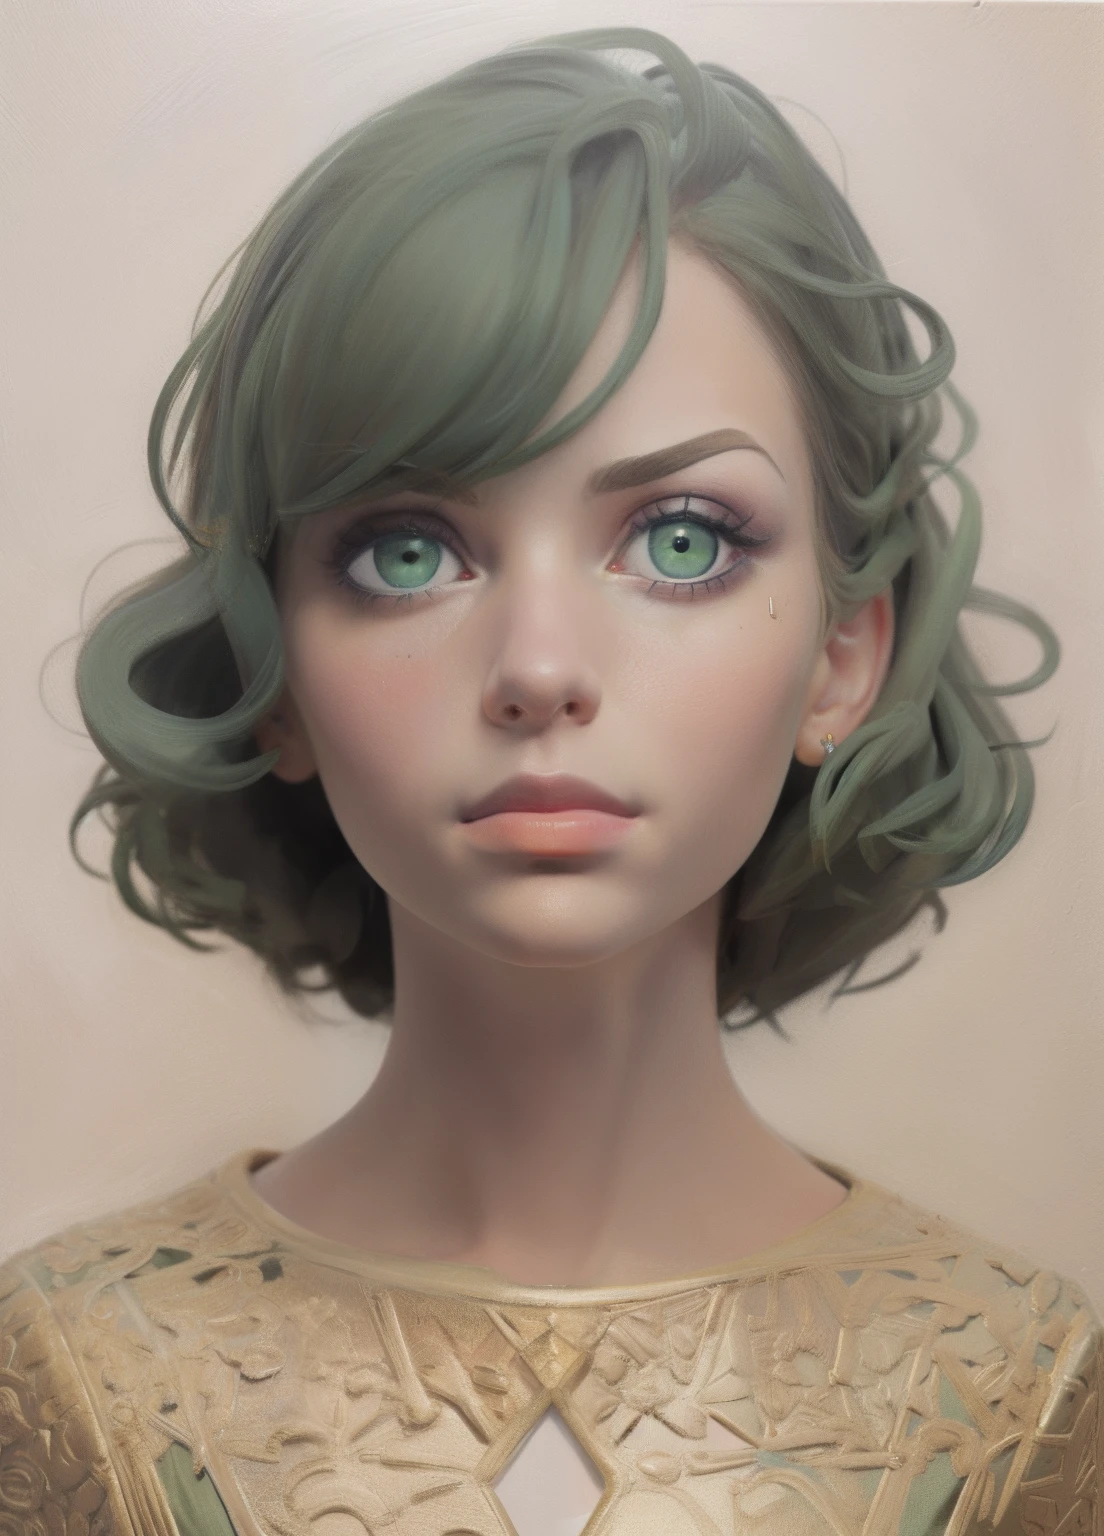 1 garota, retrato, Pintura a óleo, moderno, proporções realistas, olhos verdes escuros, rosto bonito, rosto simétrico, olhos simétricos, pose dinâmica, intricado, intricado details, foco nitído